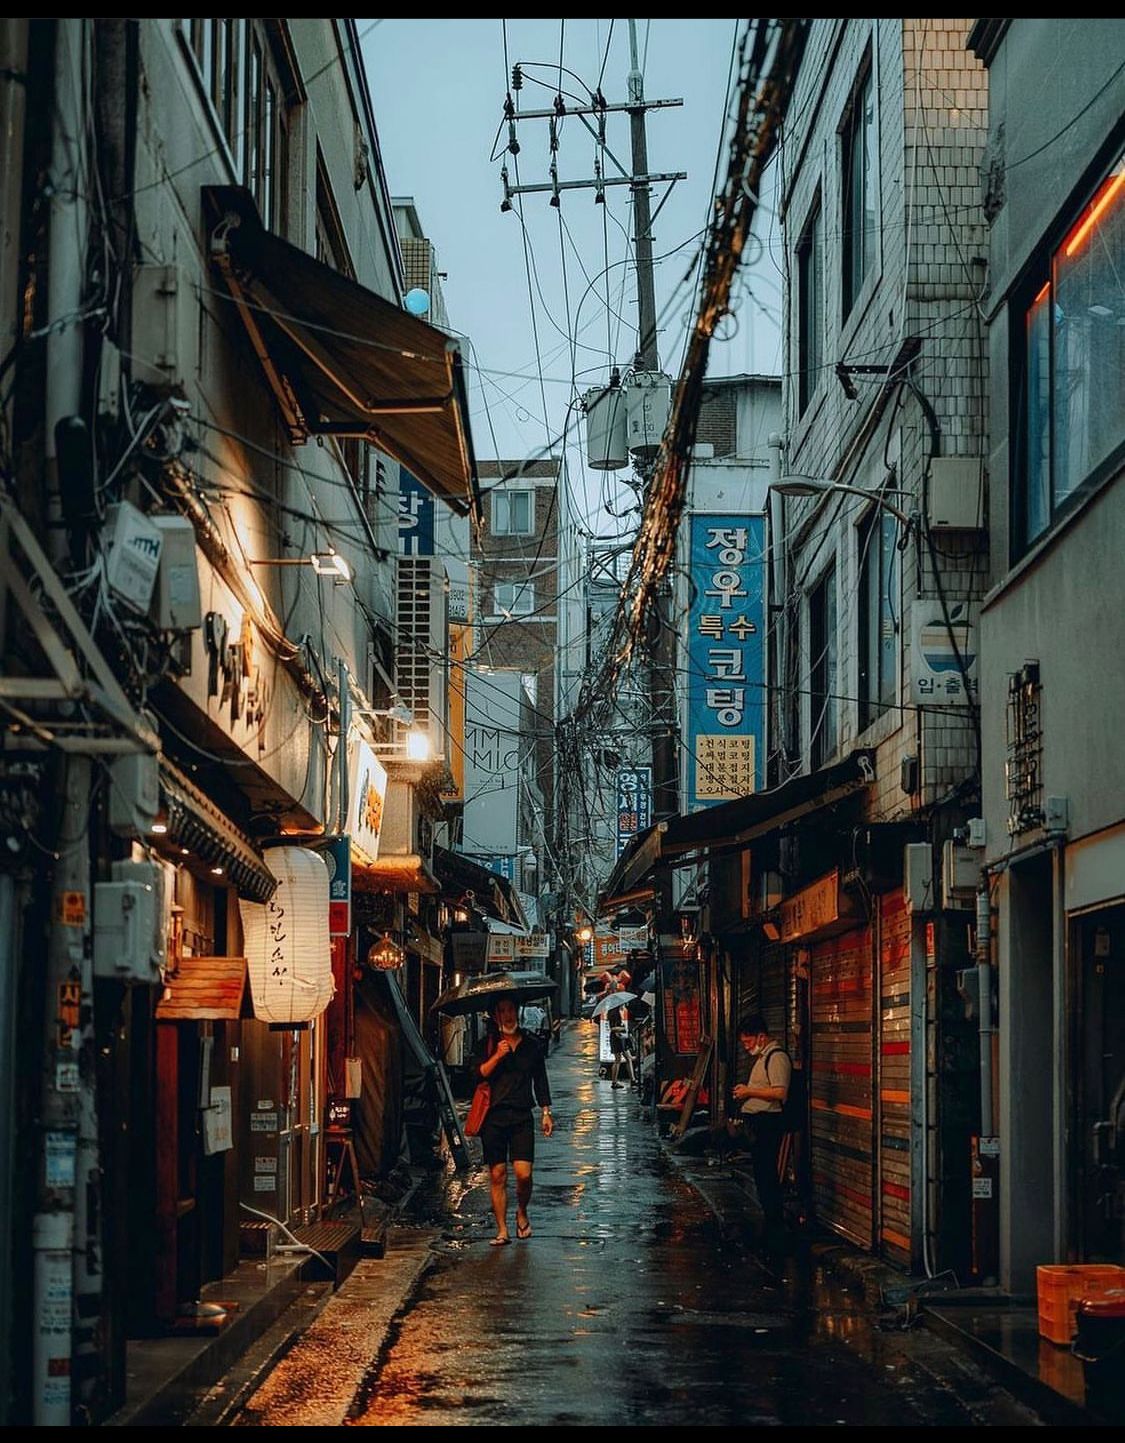 Seoul, Korea - Backsteets